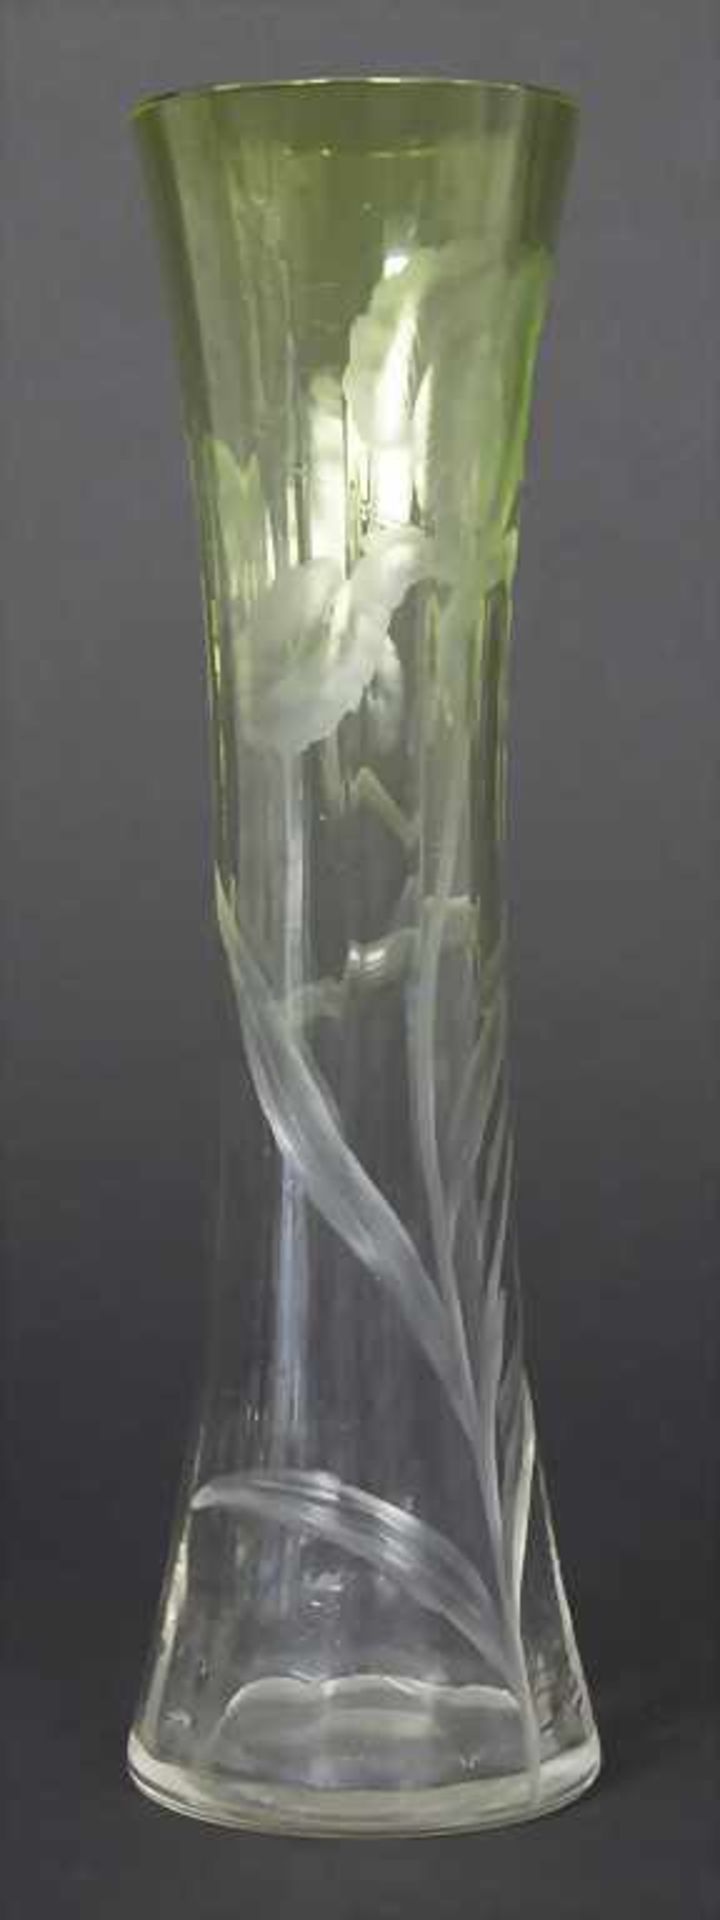 Jugendstil Vase mit Iris / An Art Nouveau vase with iris, Ludwig Moser, Karlsbad, ca. - Image 4 of 7